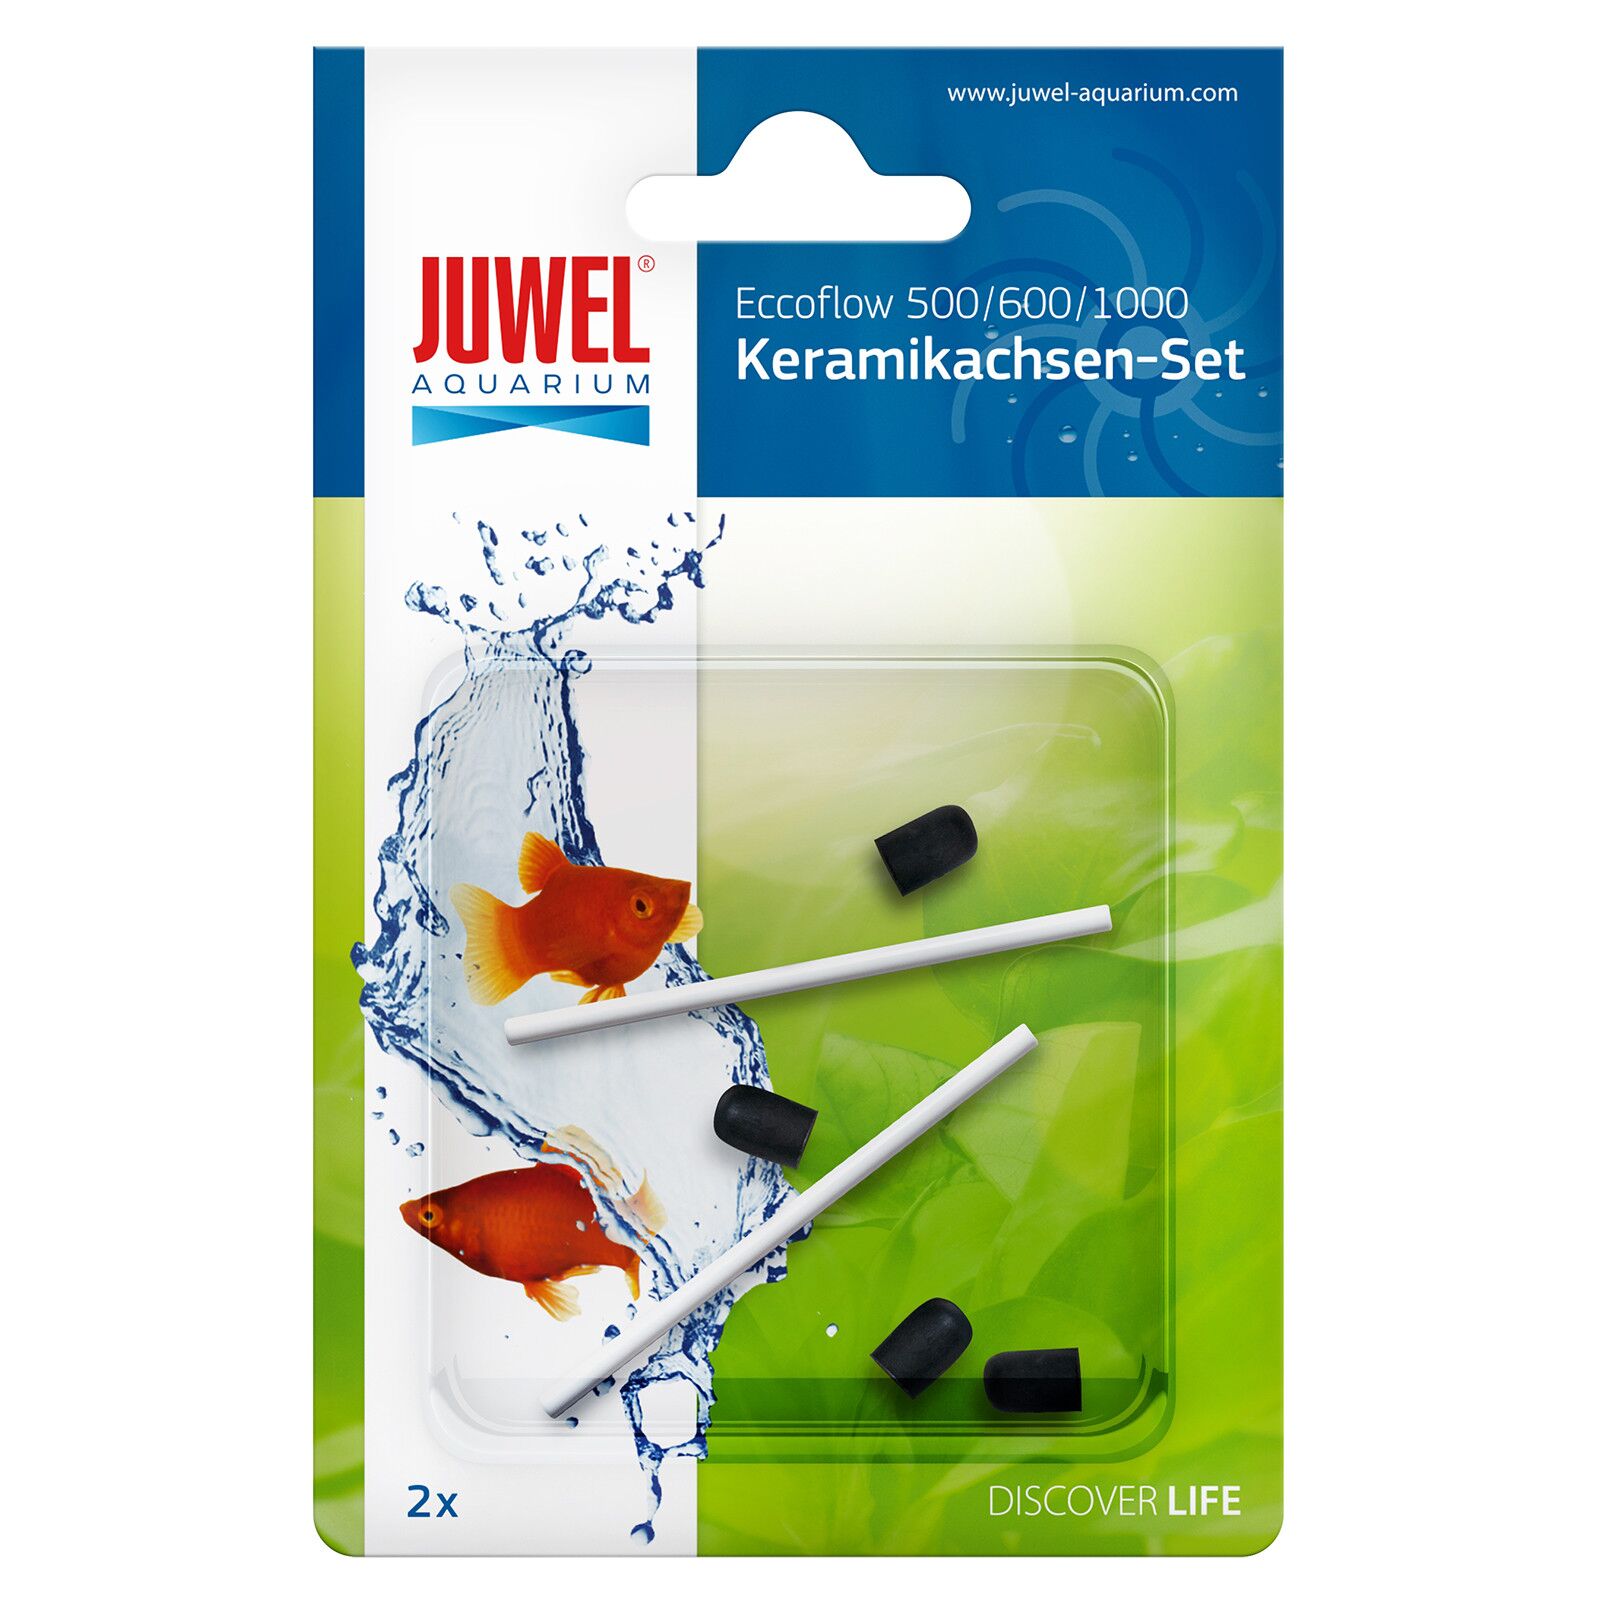 Juwel - Keramikachsen Set - Eccoflow